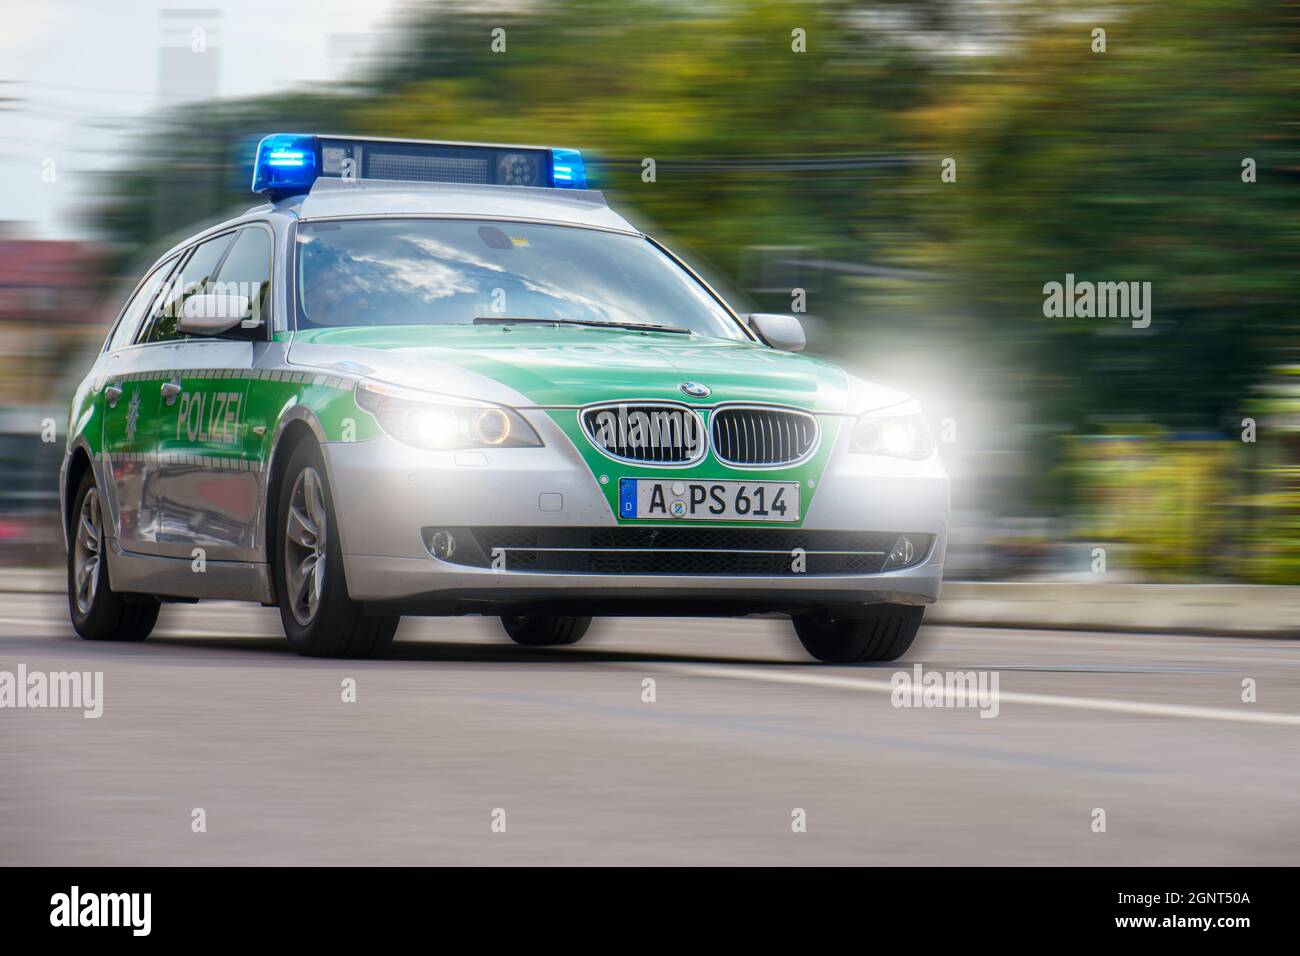 Ein Polizeiauto fährt mit hoher Geschwindigkeit und Blaulicht durch die Stadt Augsburg Stock Photo